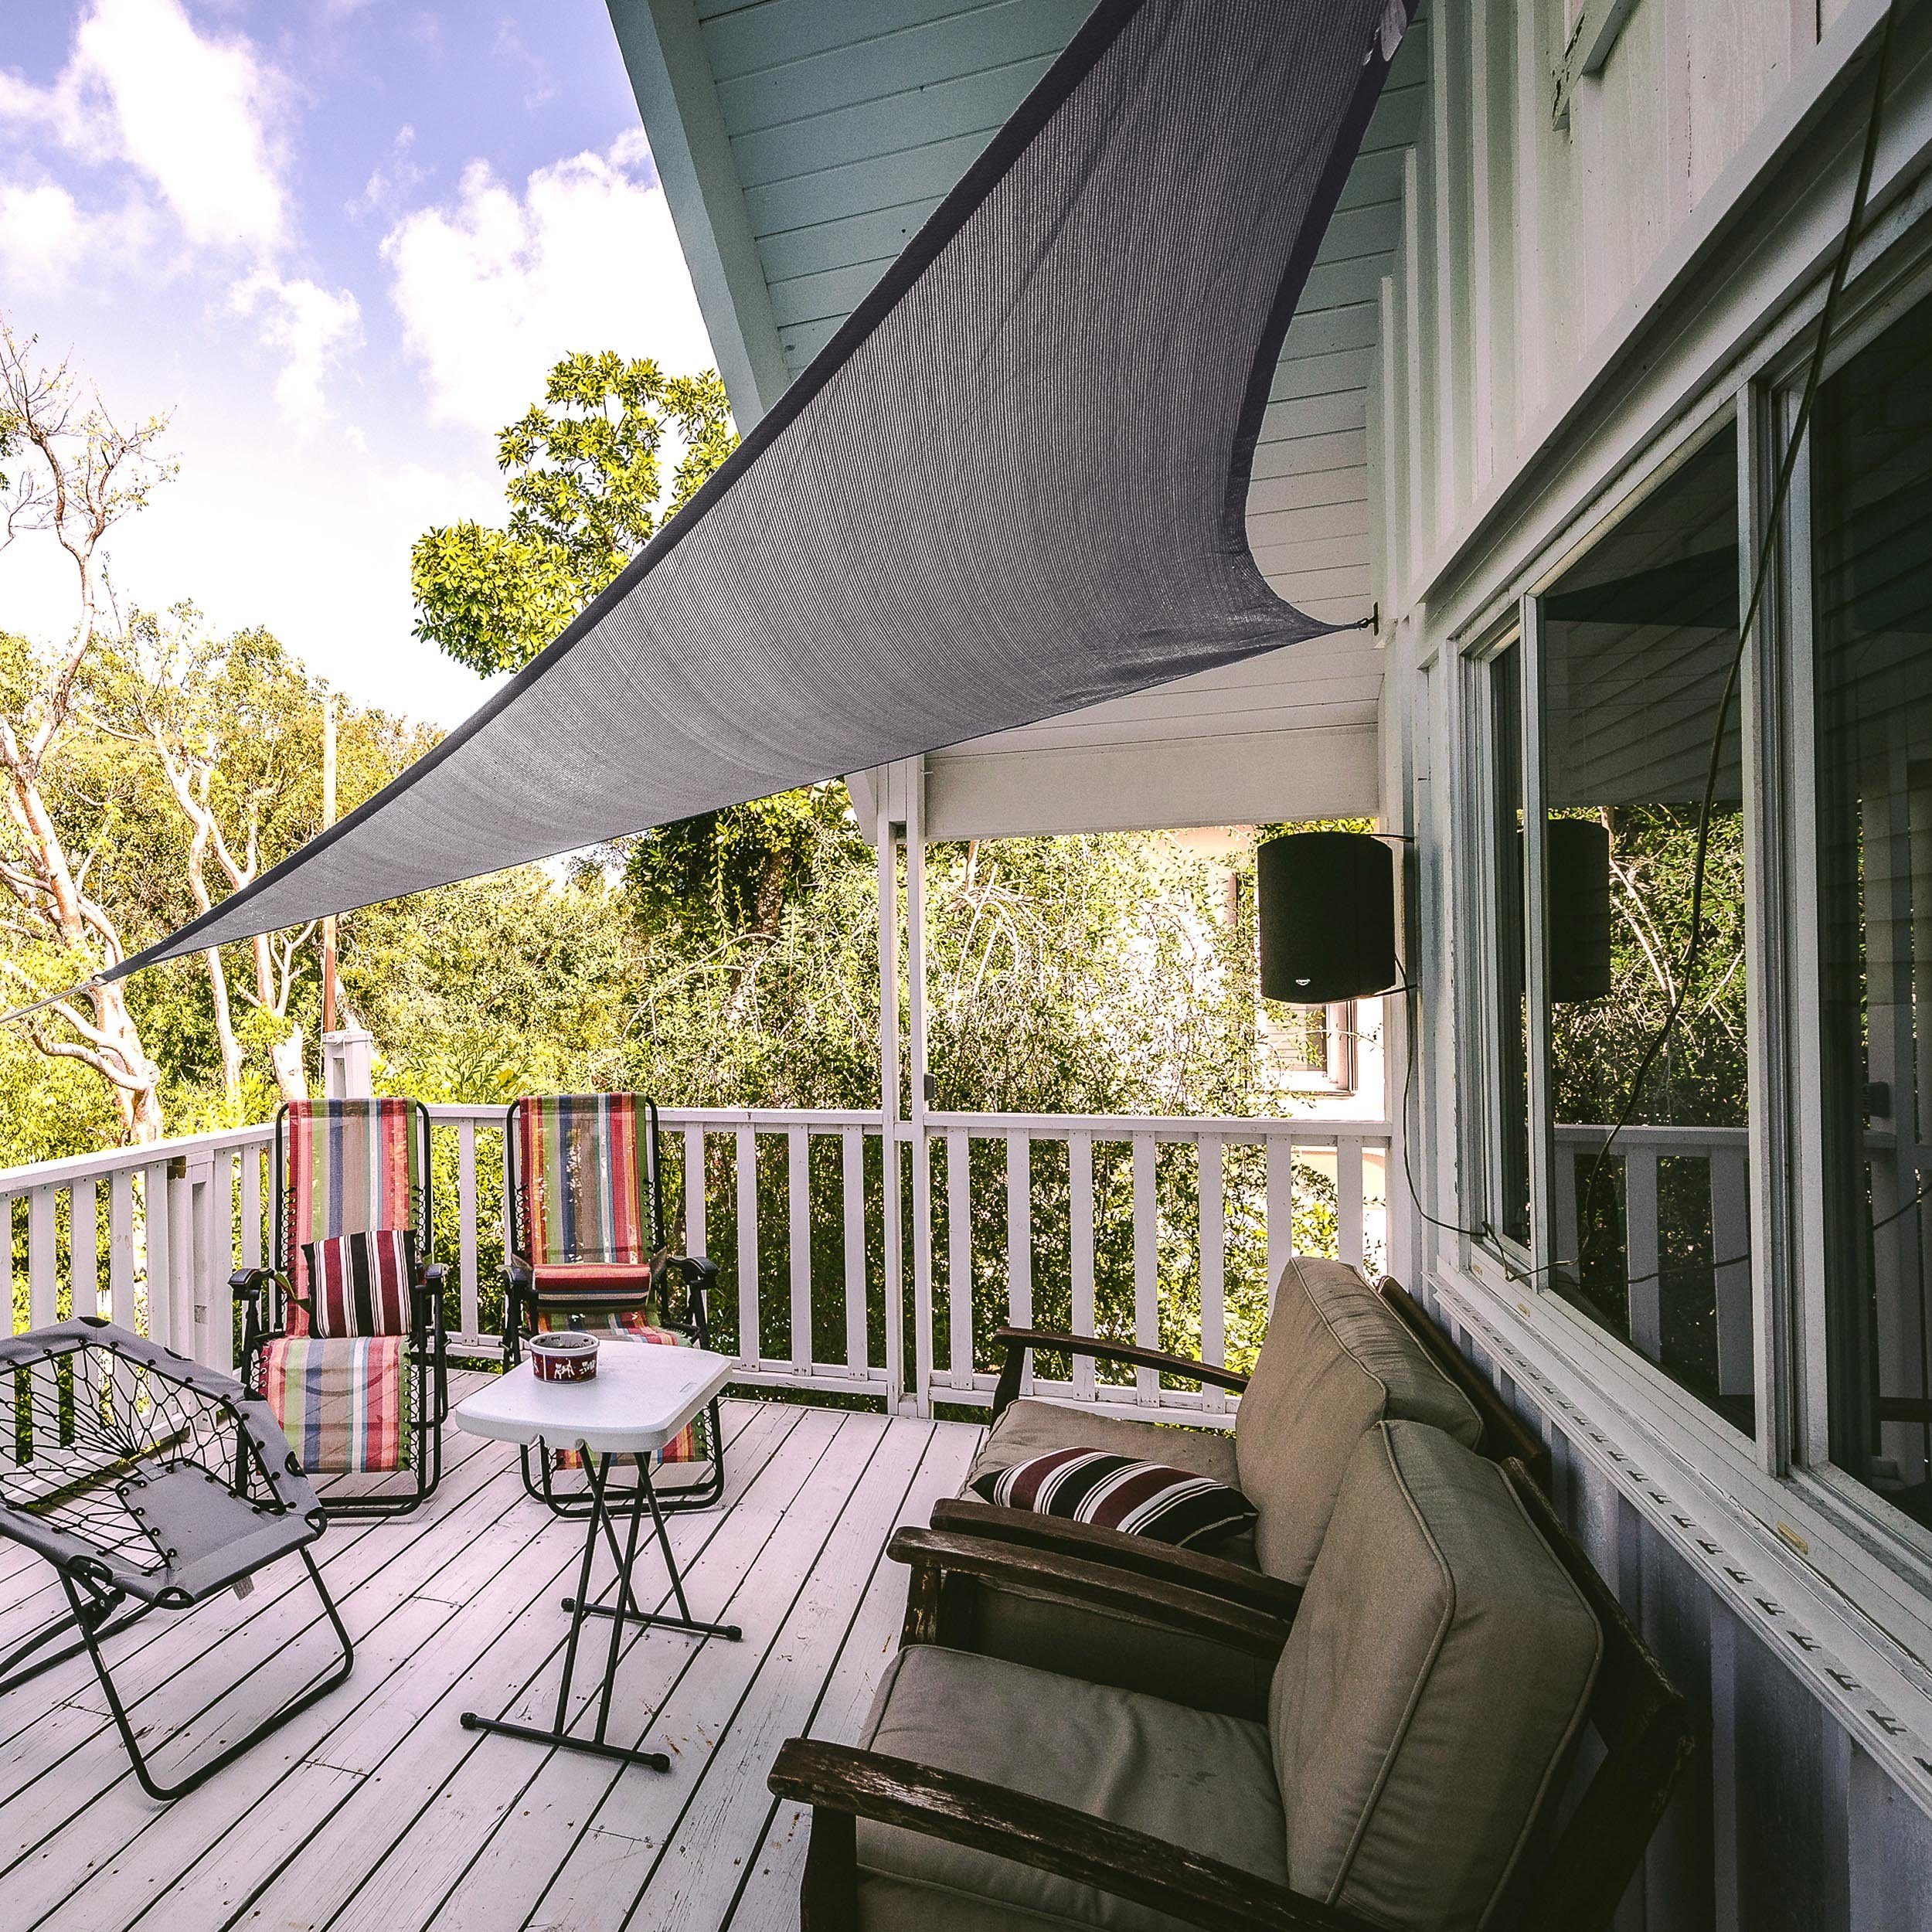 und Light und & stabiler Hometex Sonnensegel Windschutz stabil Textiles vielseitig, Grey robust, Garten, für - Terrasse Balkon robuster Sonnenschutz Schattenspender Premium